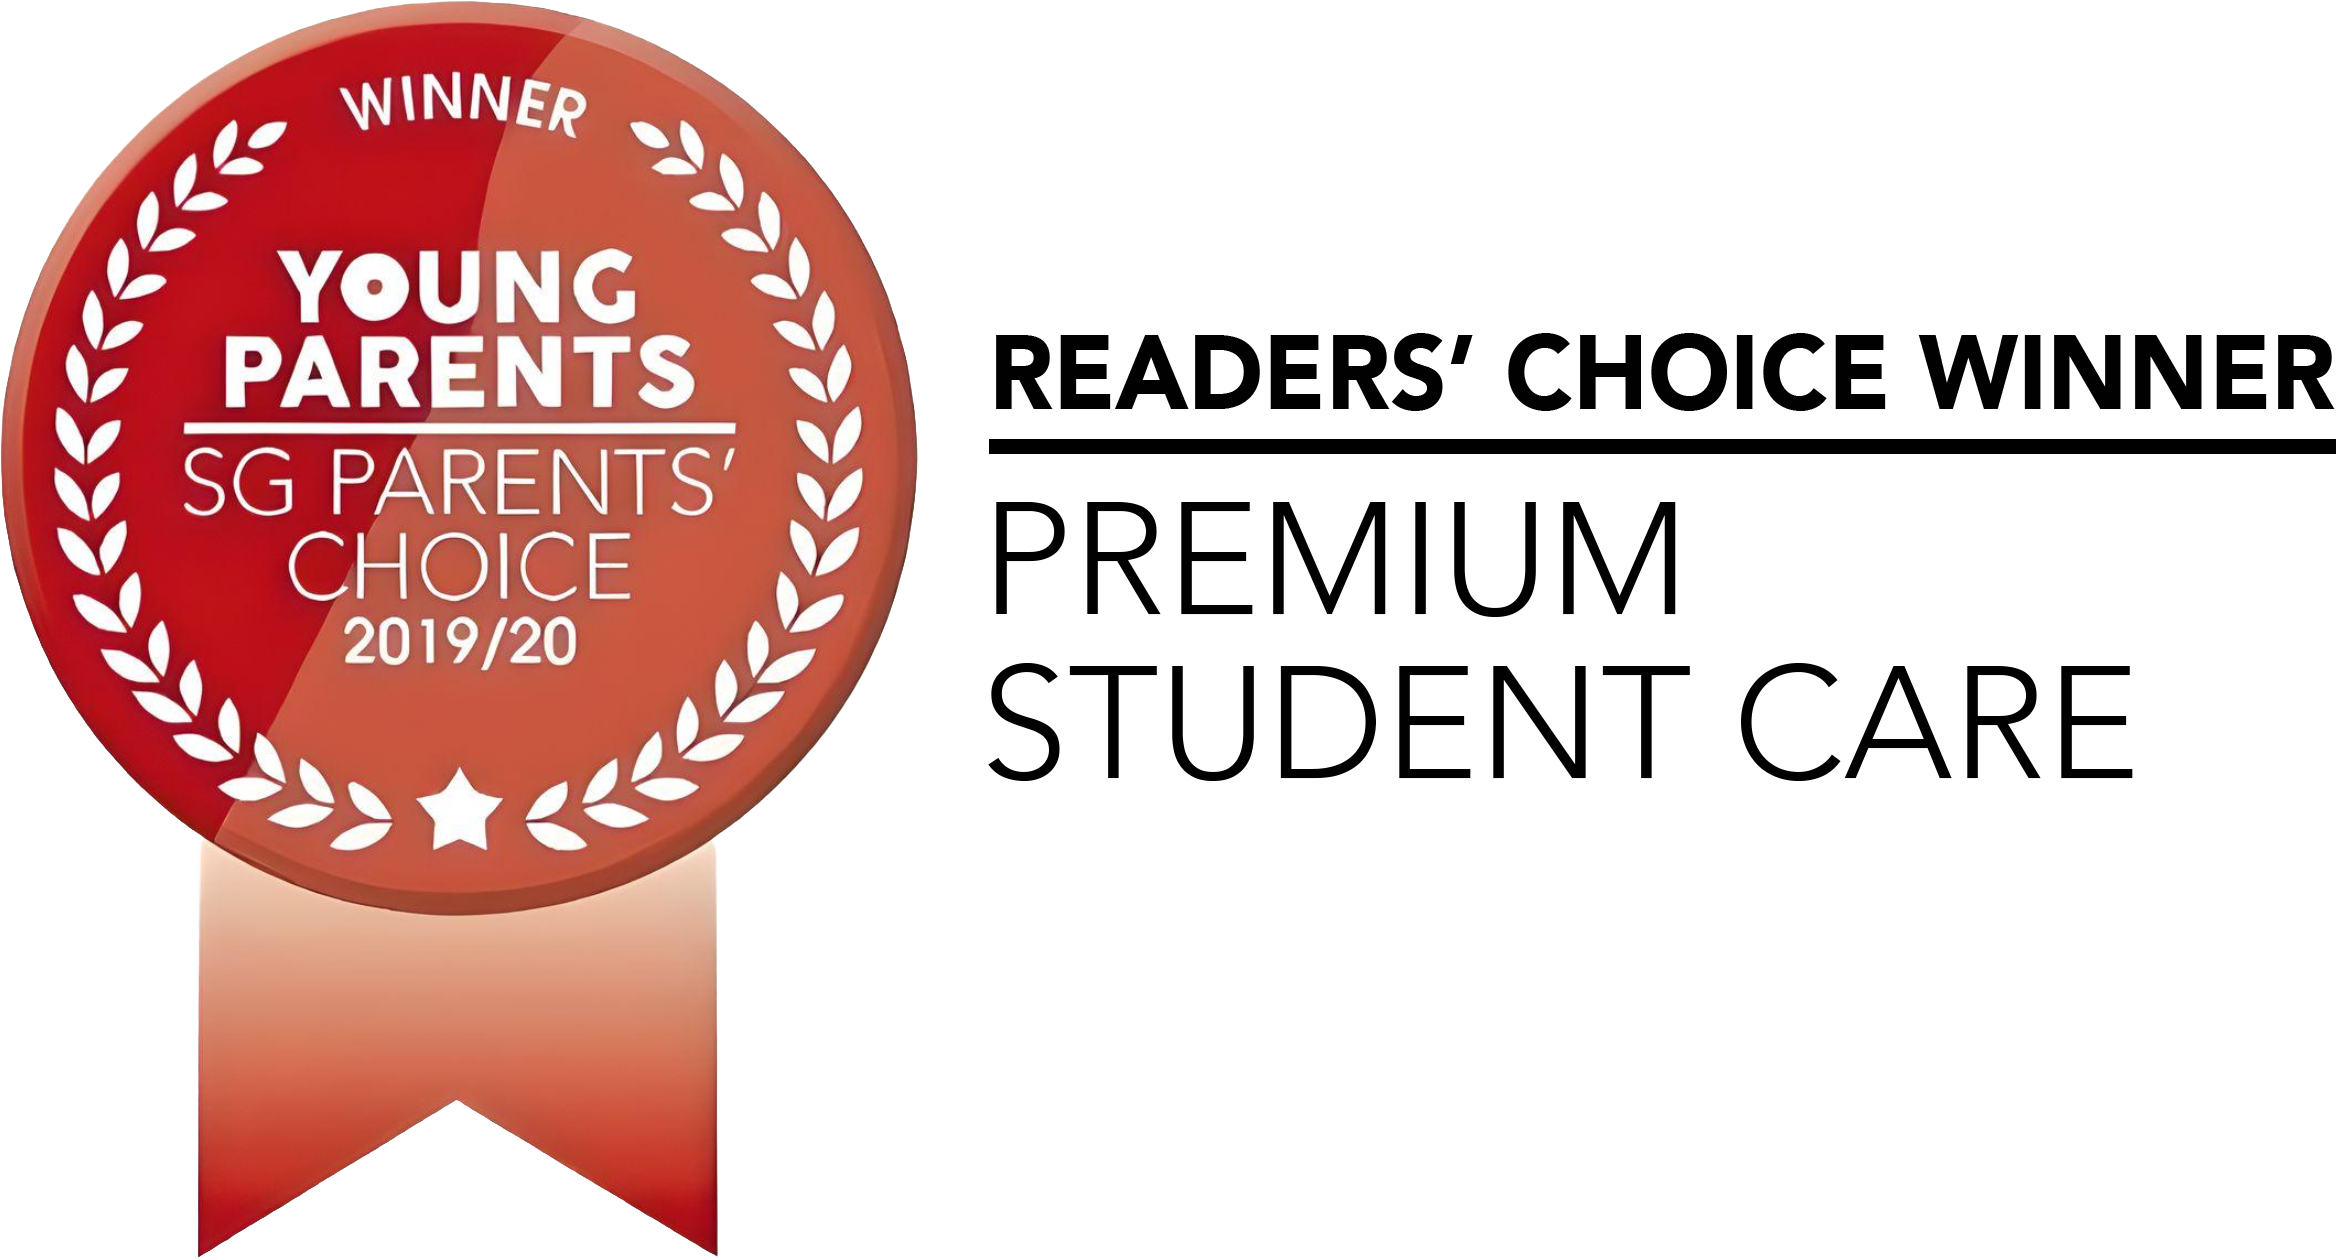 Young Parents - SG Parents' Choice Award 2019/2020 - Premium Student Care